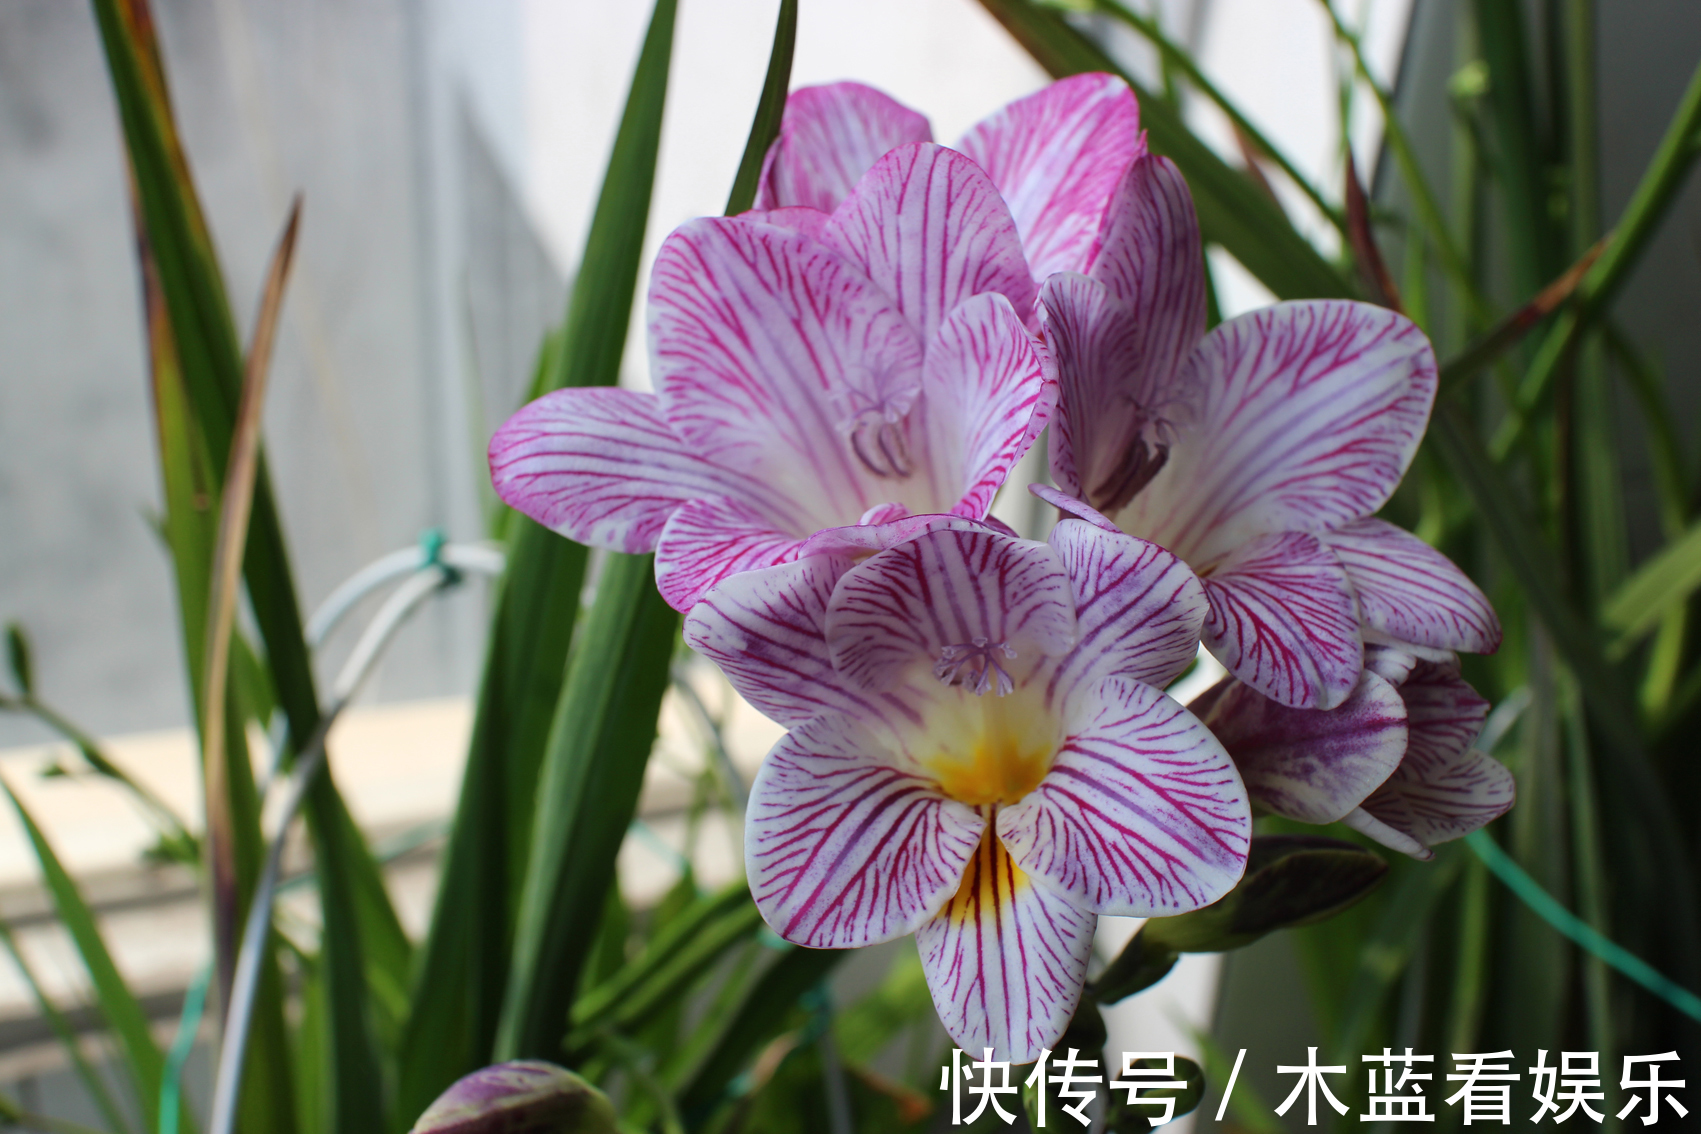 喜欢菊花 就养 珍奇名菊 绿安娜 绿色花朵上开白花 惊艳 粉紫色